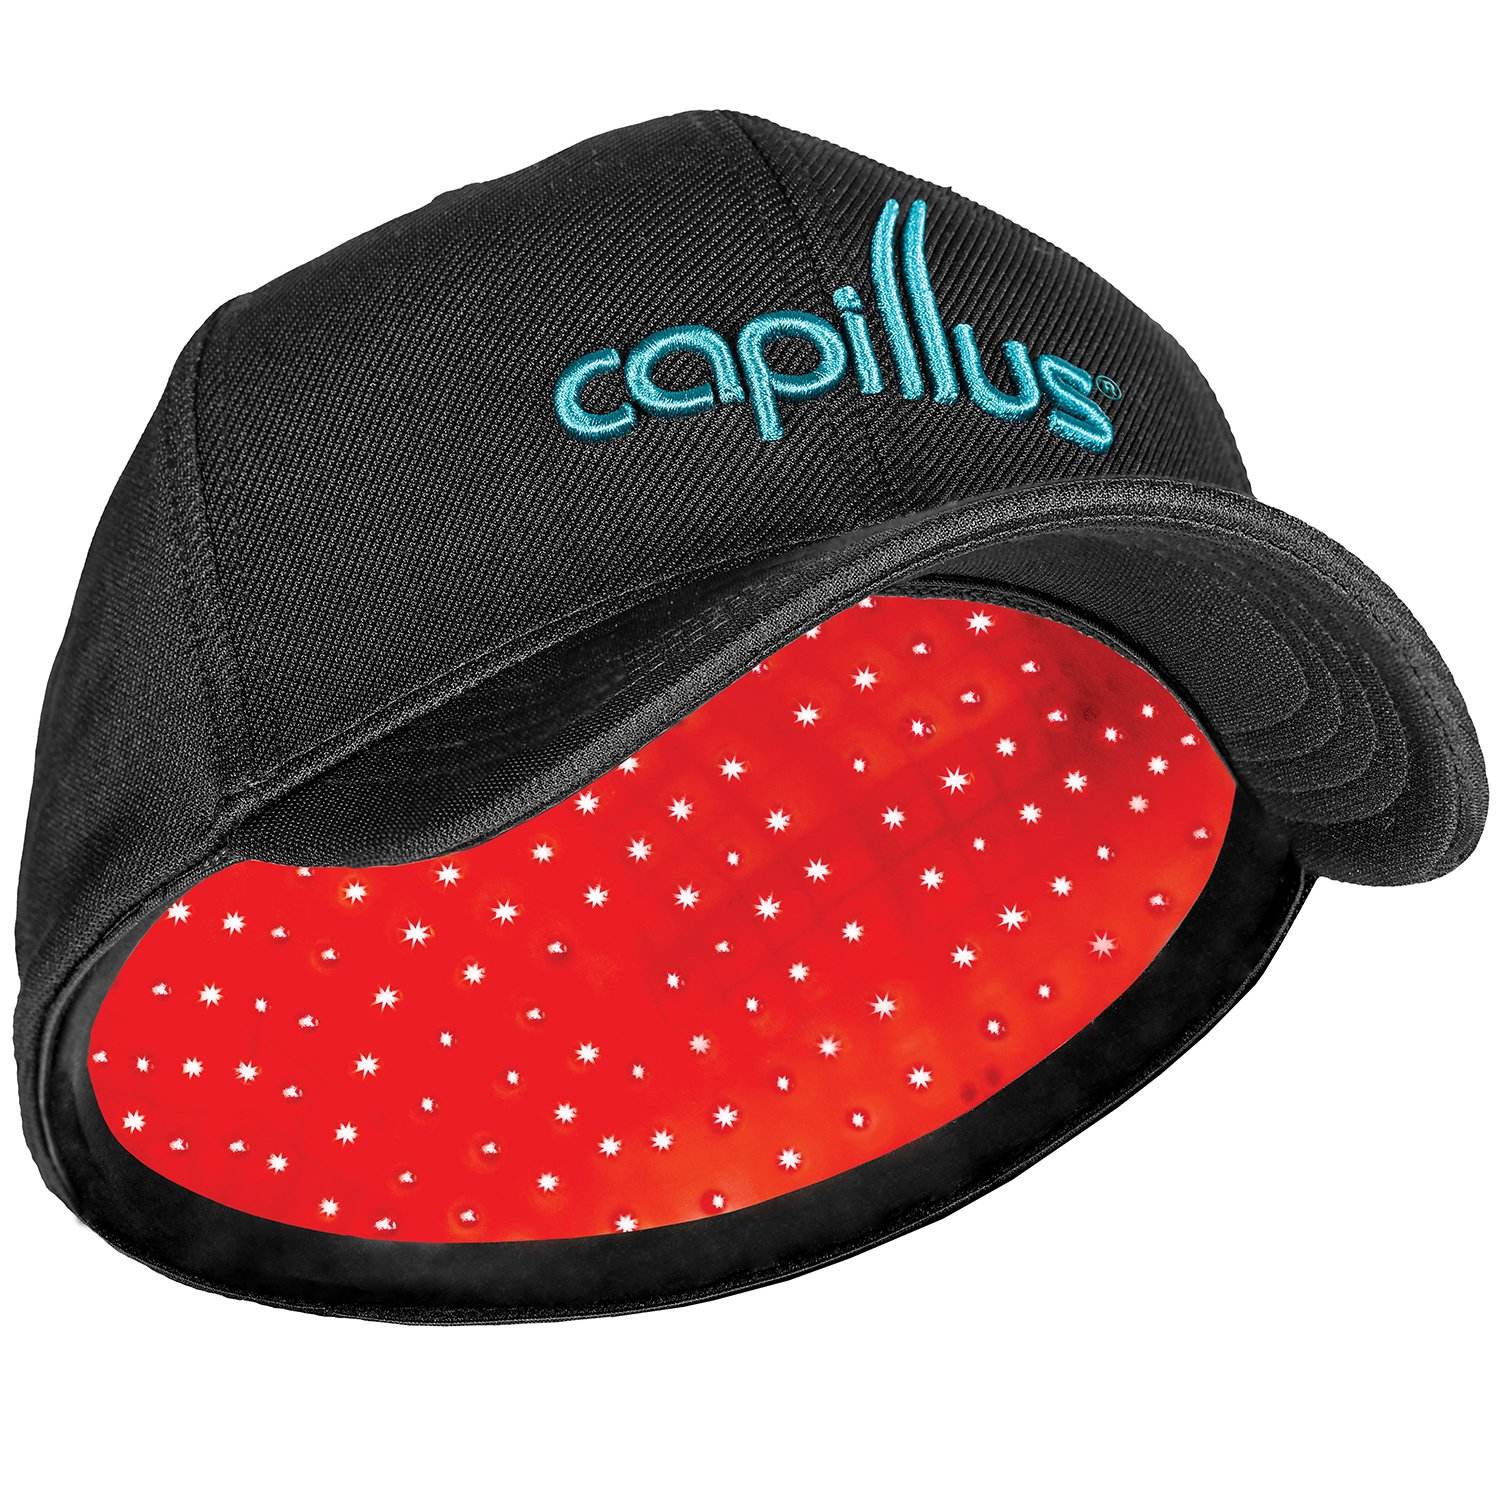 Capillus Cap